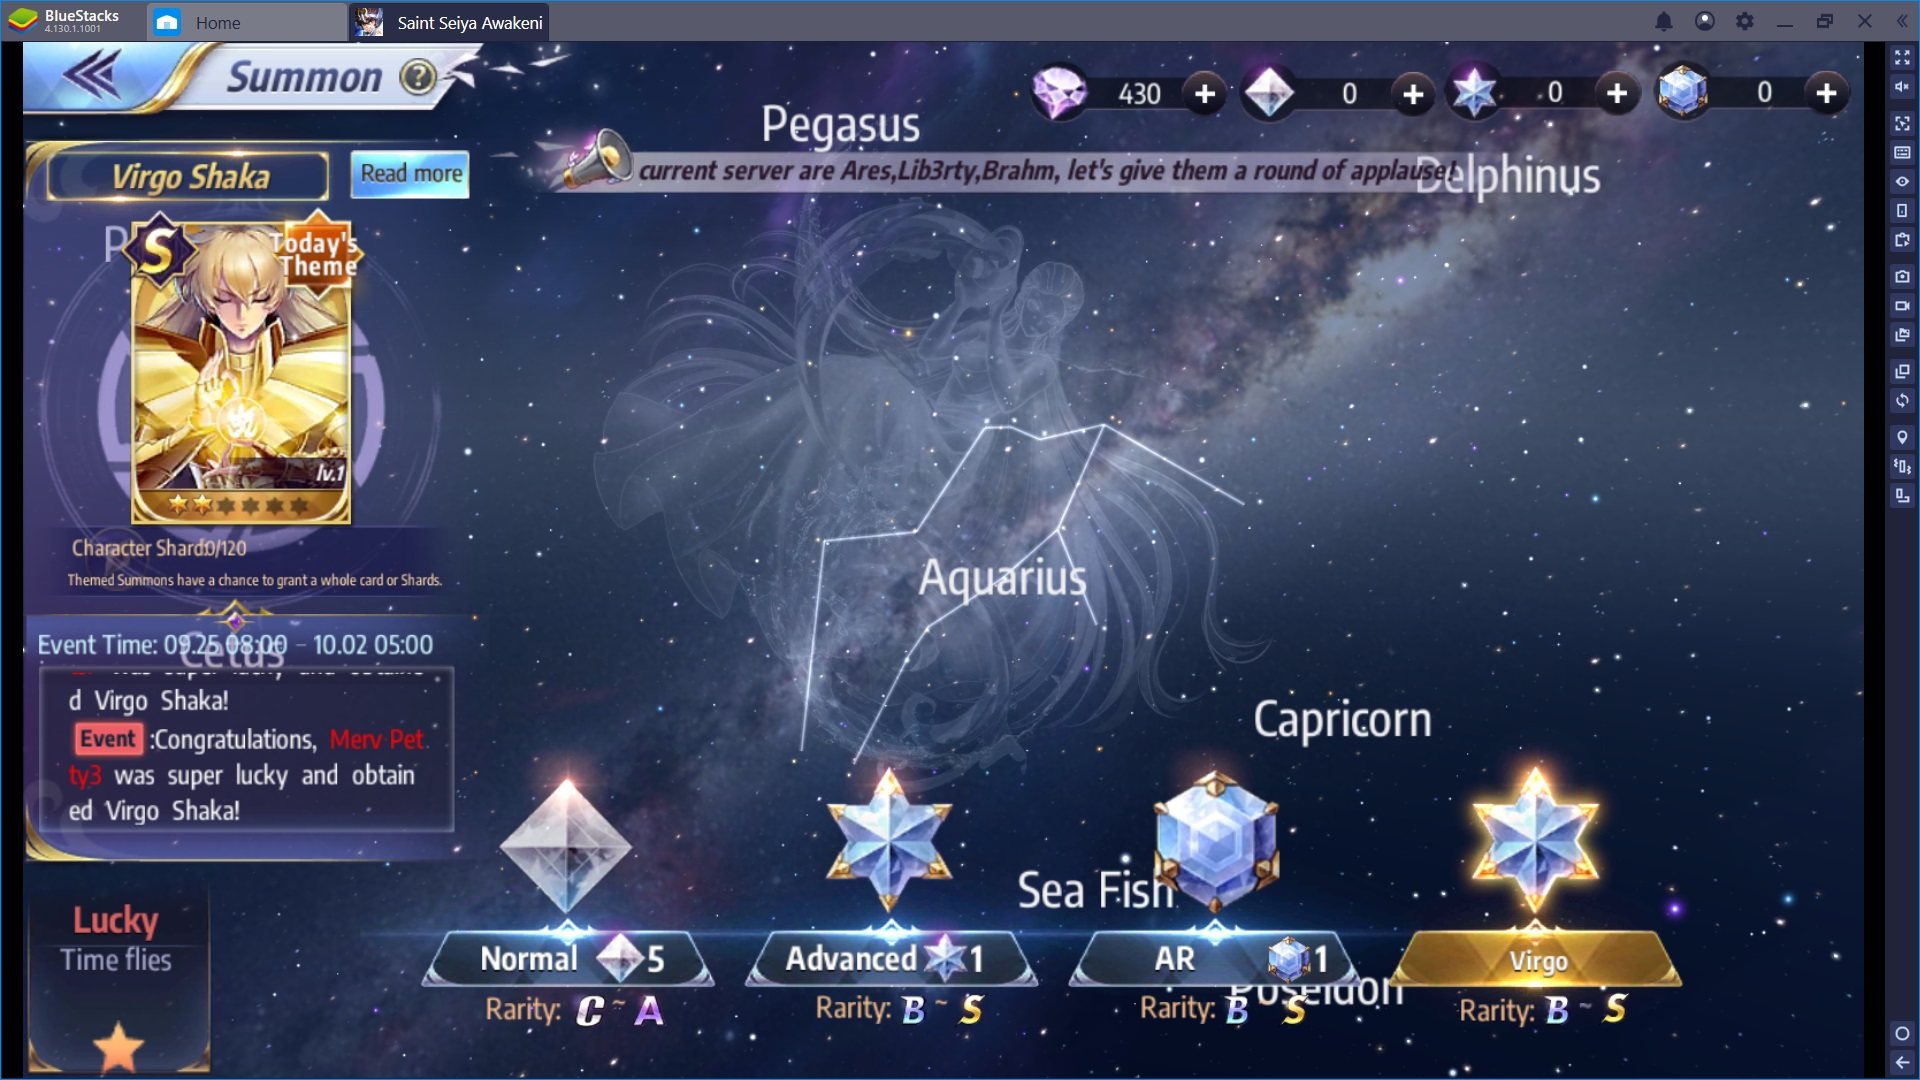 Introduzione a Saint Seiya Awakening – Il nuovo gioco dei Cavalieri dello Zodiaco!